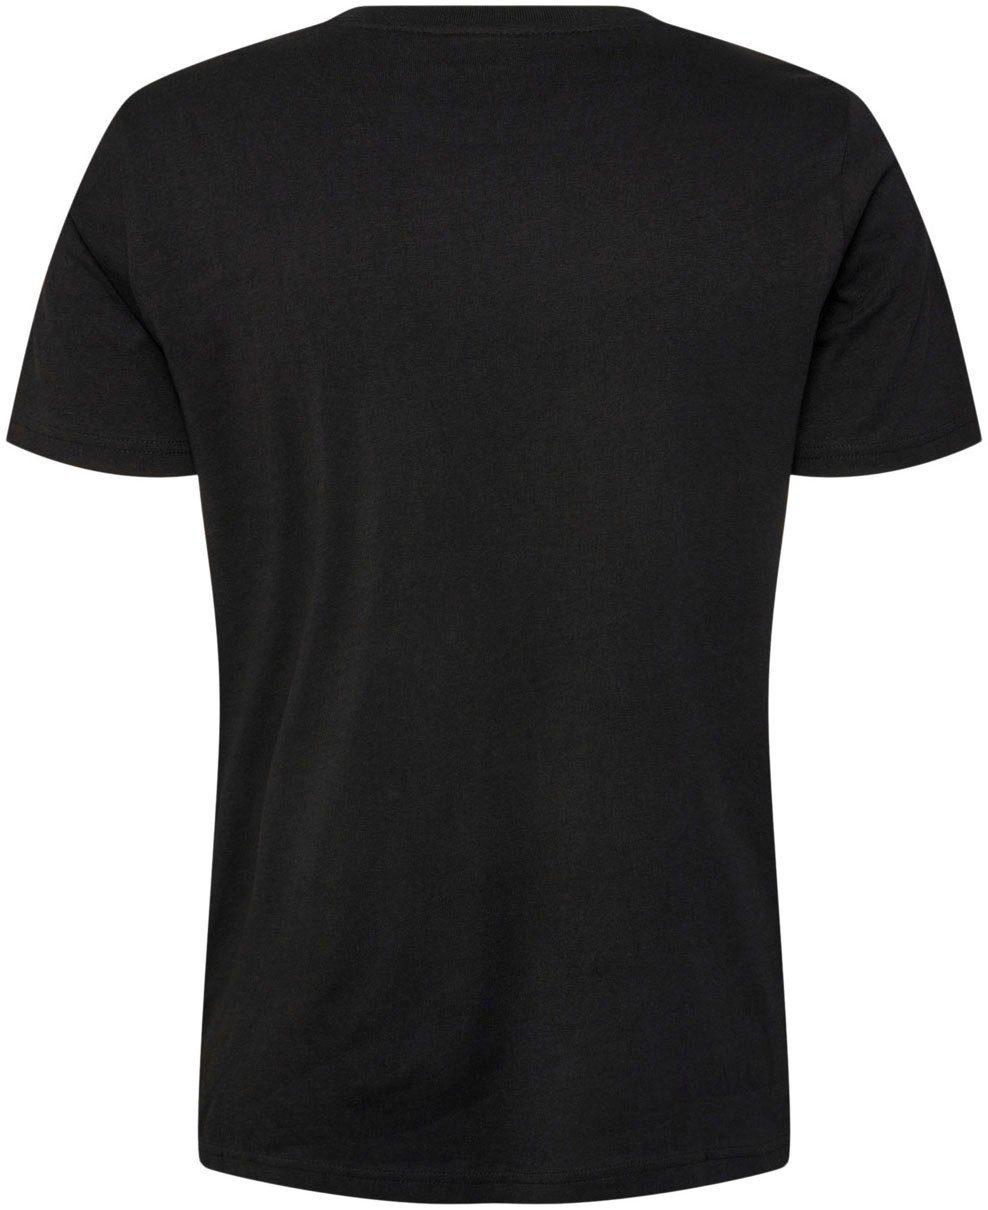 ICONS T-SHIRT T-Shirt BLACK hummel